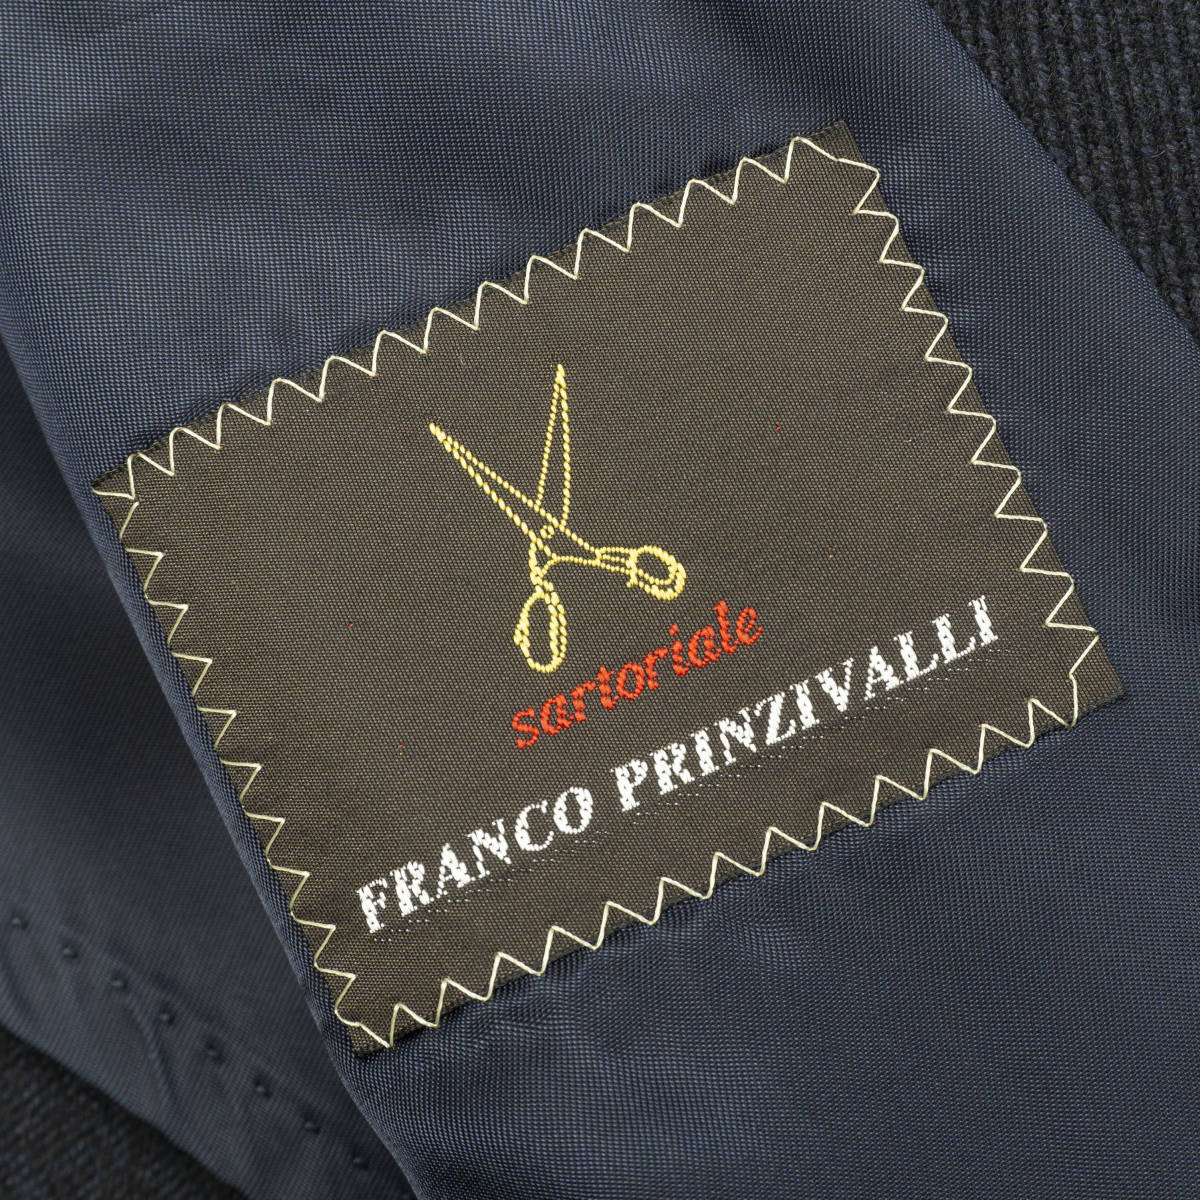 優雅な1着『FRANCO PRINZIVALLI』チェスターコート 44(S相当) ネイビー 三陽商会 日本製 フランコプリンツィバァリ メンズ 管理1070_画像6